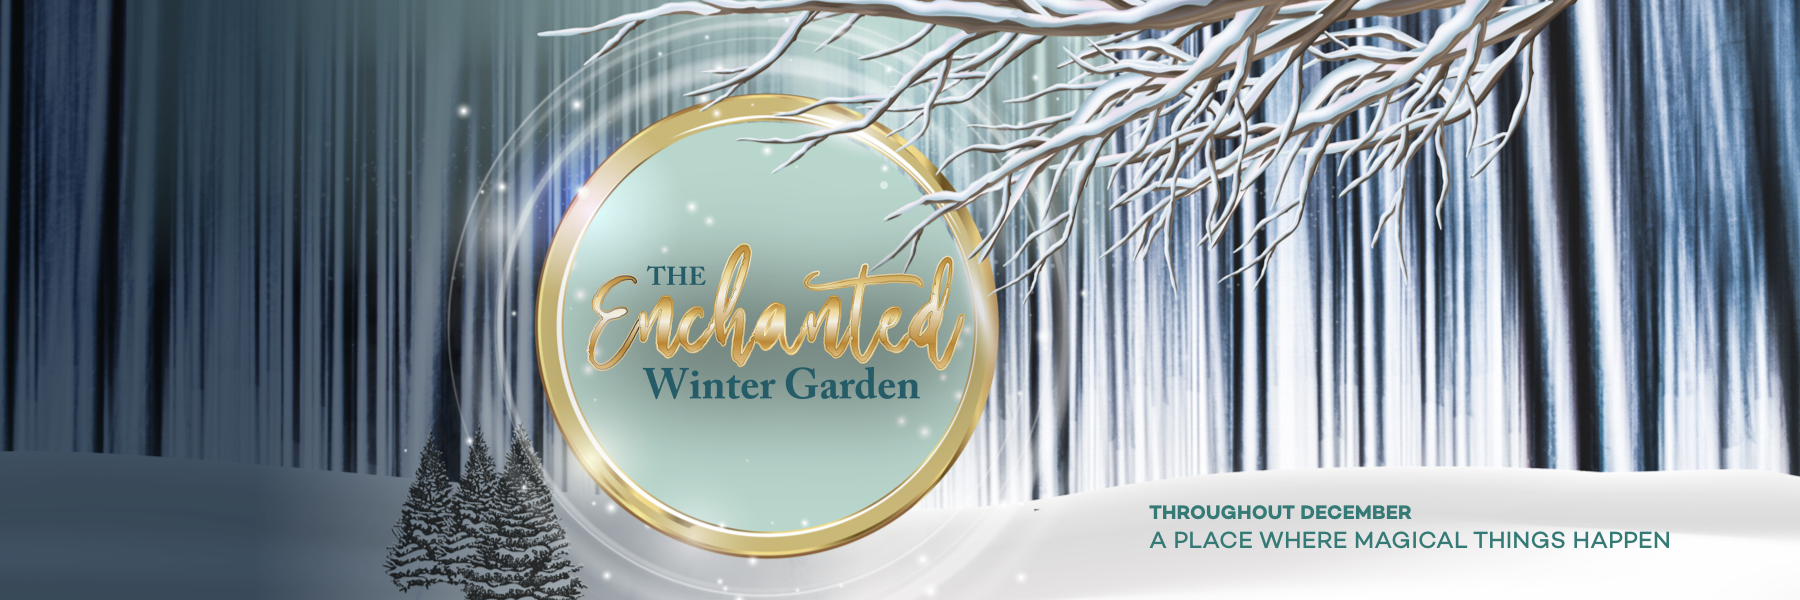 The Enchanted Winter Garden Ayr Central